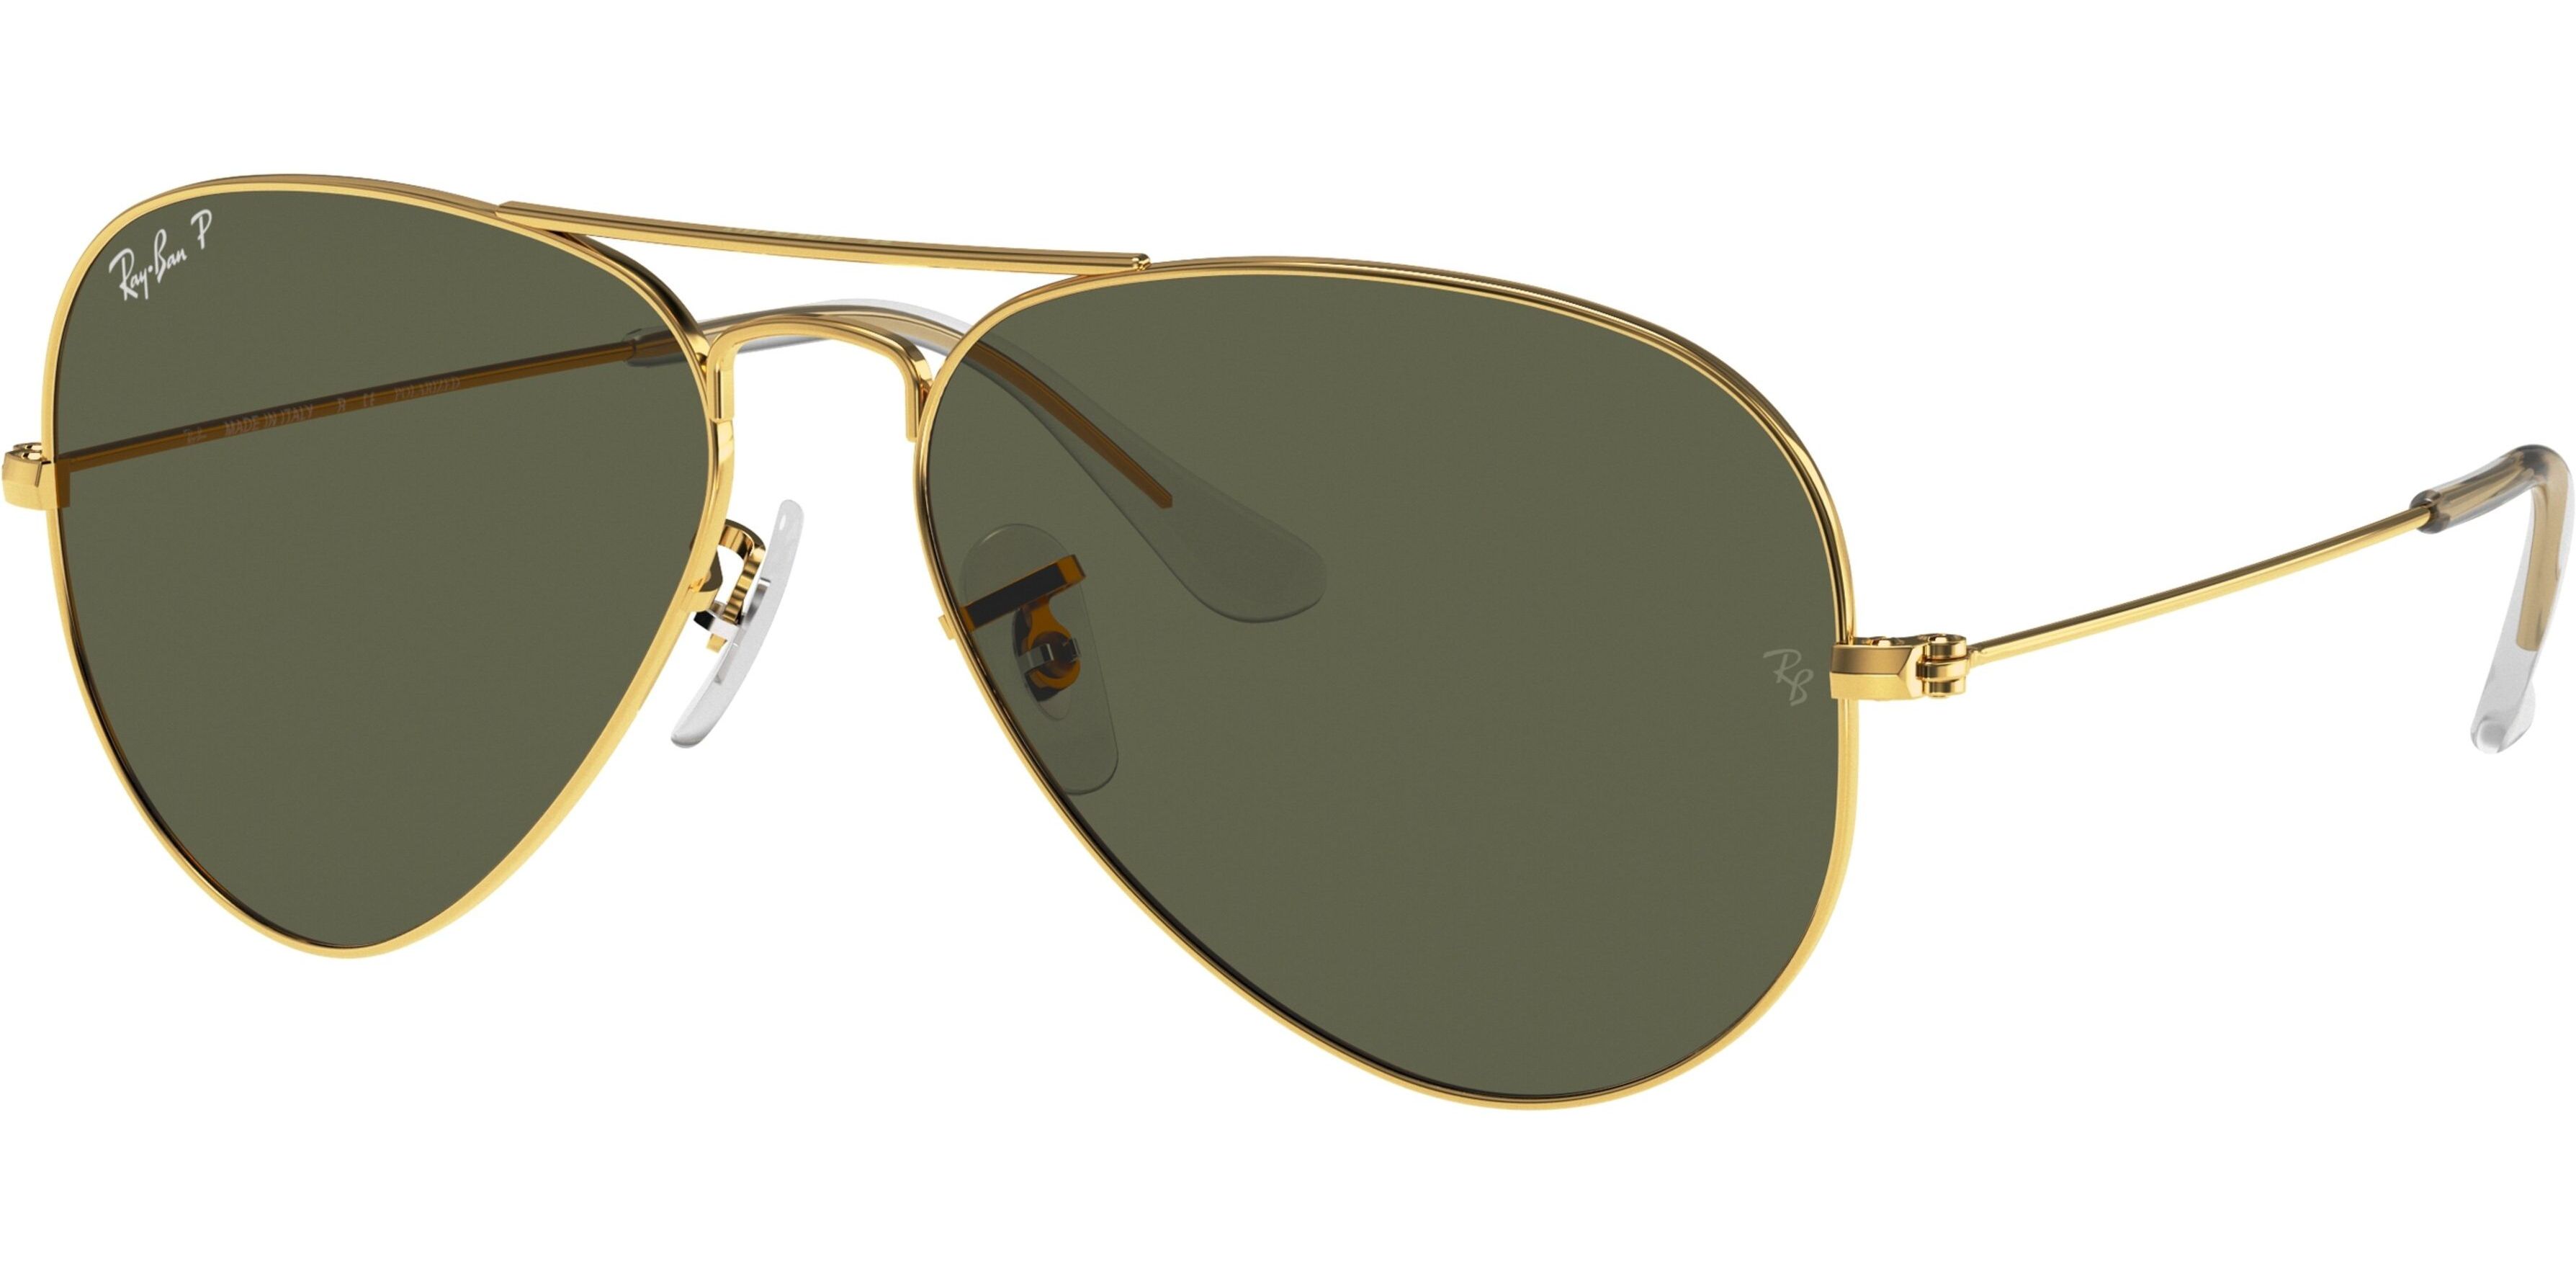 Sluneční brýle Ray-Ban® model 3025, barva obruby zlatá lesk, čočka zelená polarizovaná, kód barevné varianty 00158. 